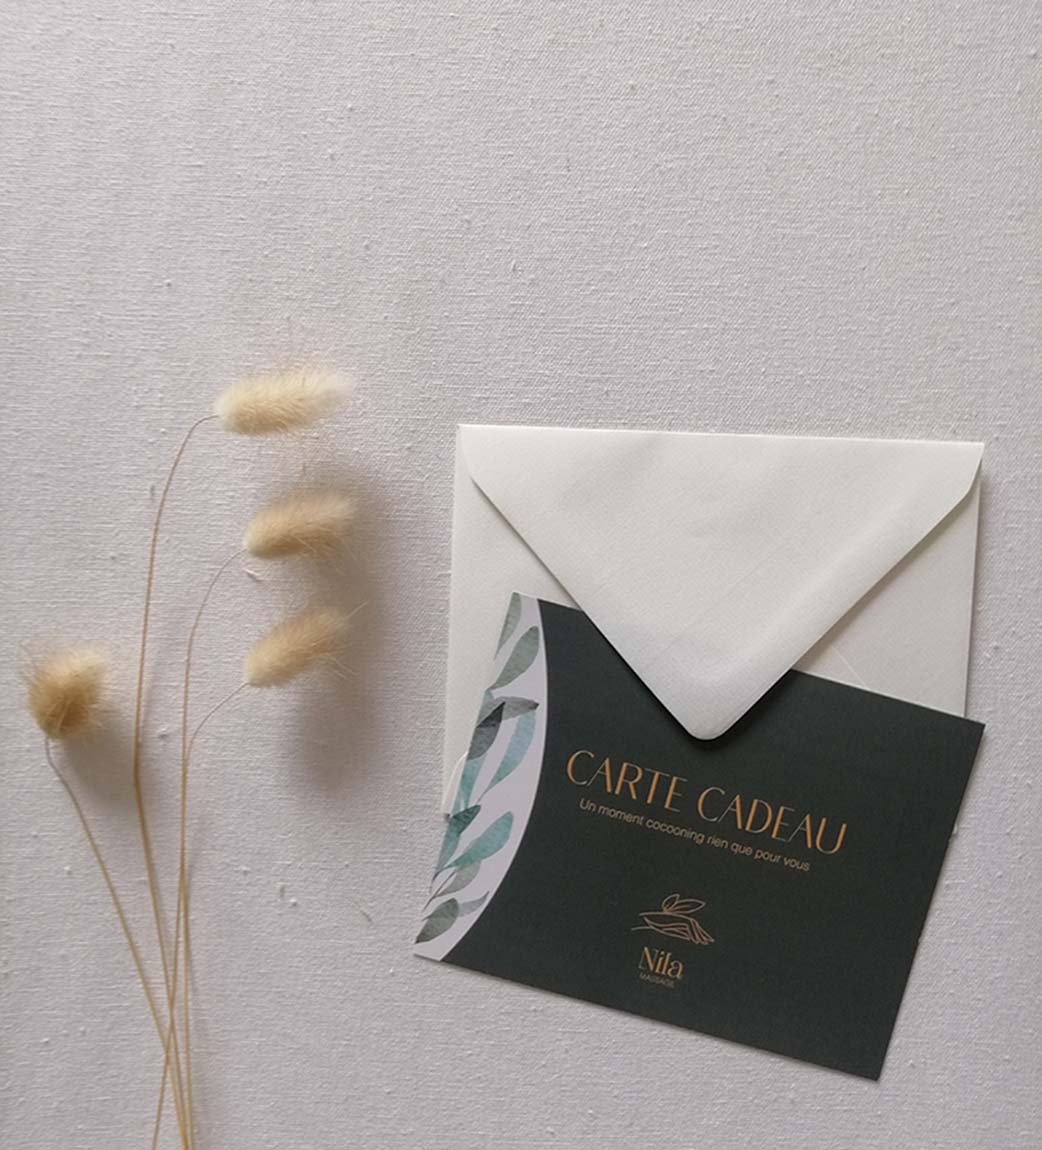 Carte cadeau cartonnée avec des motifs rappelant la nature accompagnée de son enveloppe